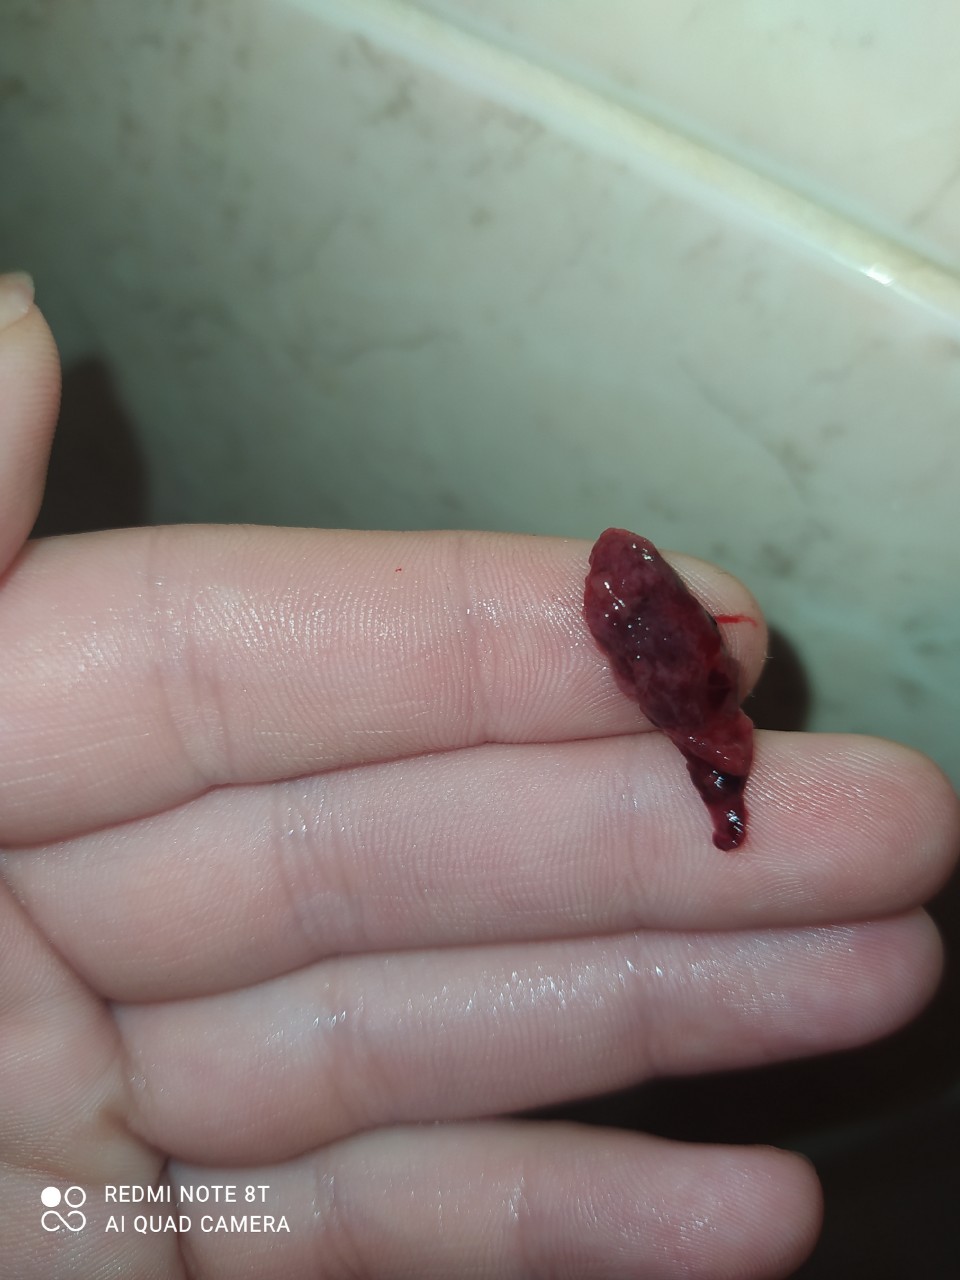 сгустки крови в сперме мужчин фото 36